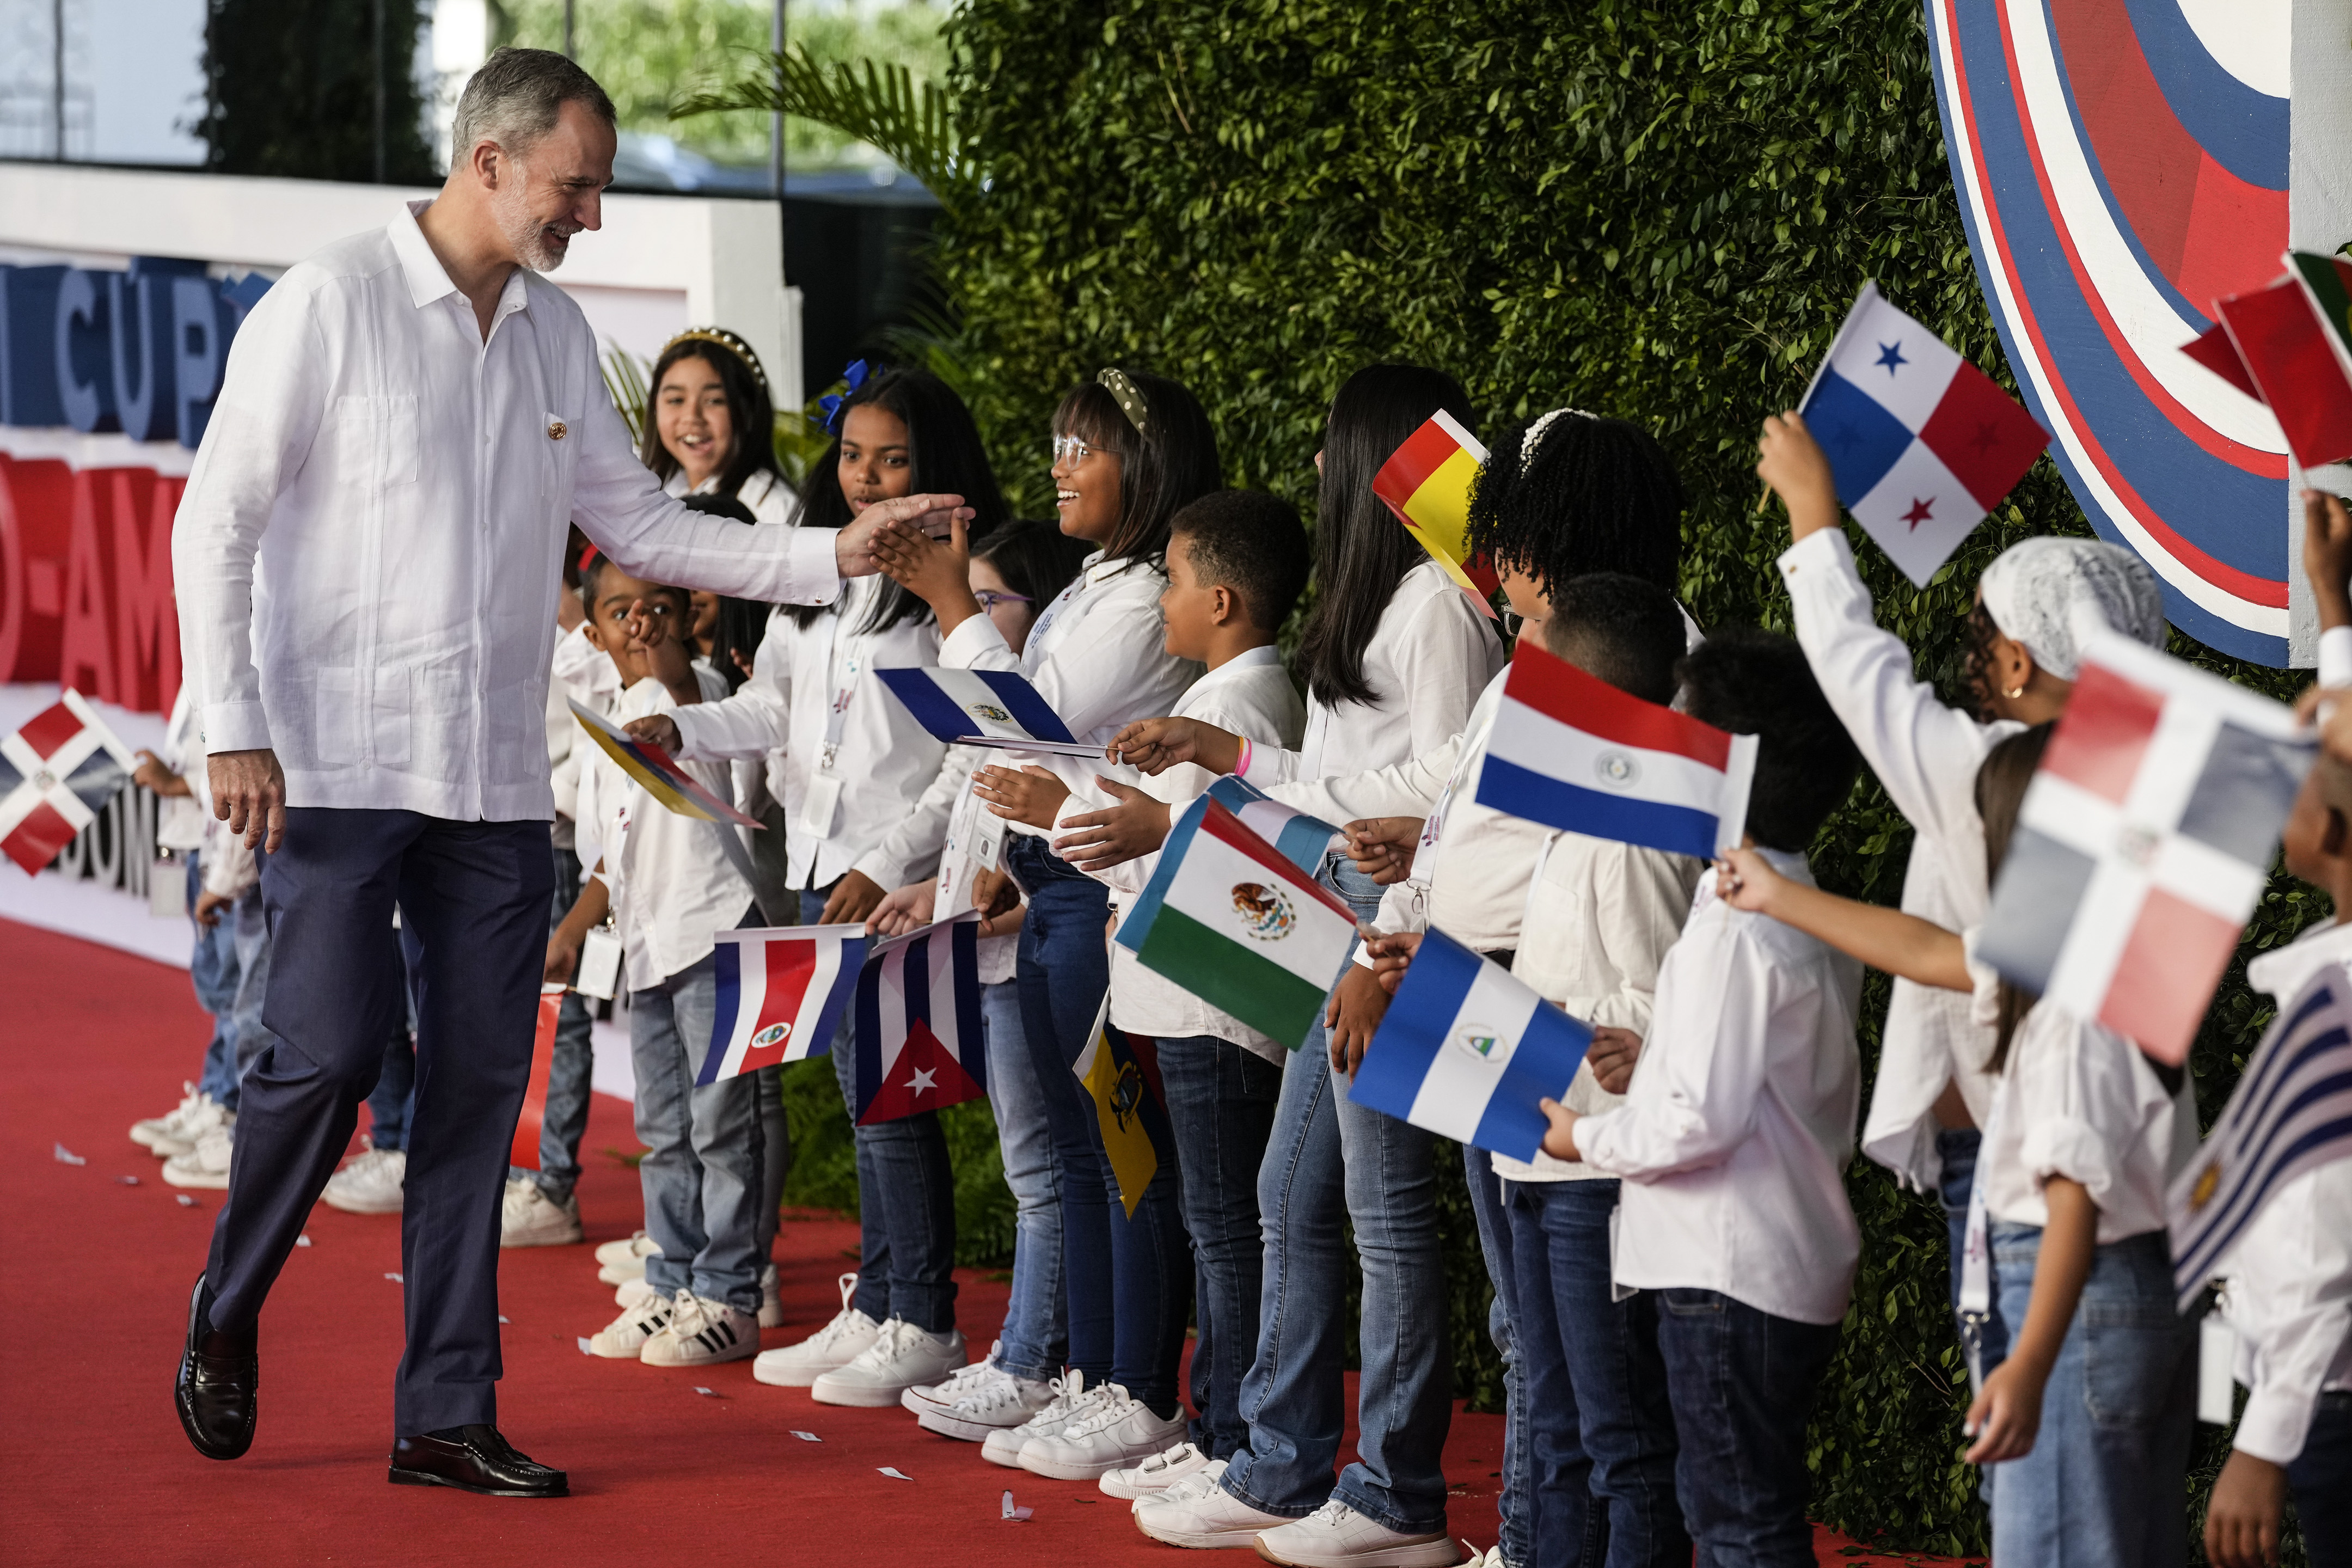 El rey Felipe VI de España saluda a los niños a su llegada a la sesión de la 28ª Cumbre Iberoamericana, en Santo Domingo, República Dominicana, el sábado 25 de marzo de 2022. (Foto AP/Ariana Cubillos)